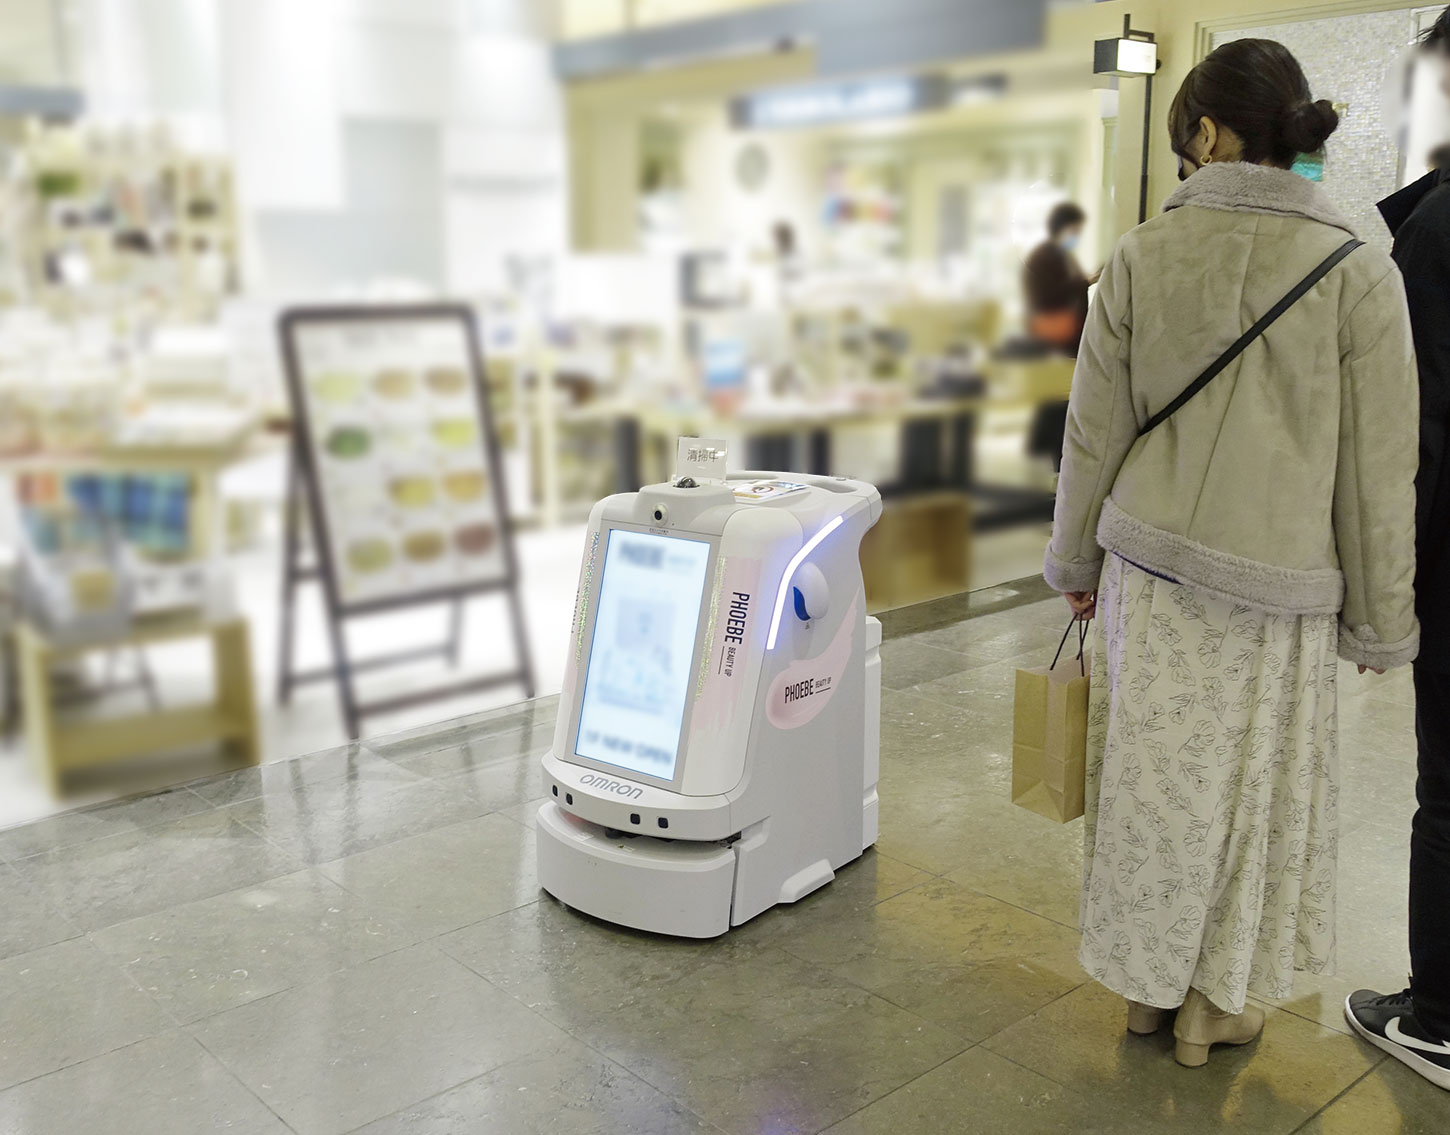 有楽町マルイで清掃ロボット導入 営業時間中に動かし デジタルサイネージの役割も 日経robotics 日経ロボティクス